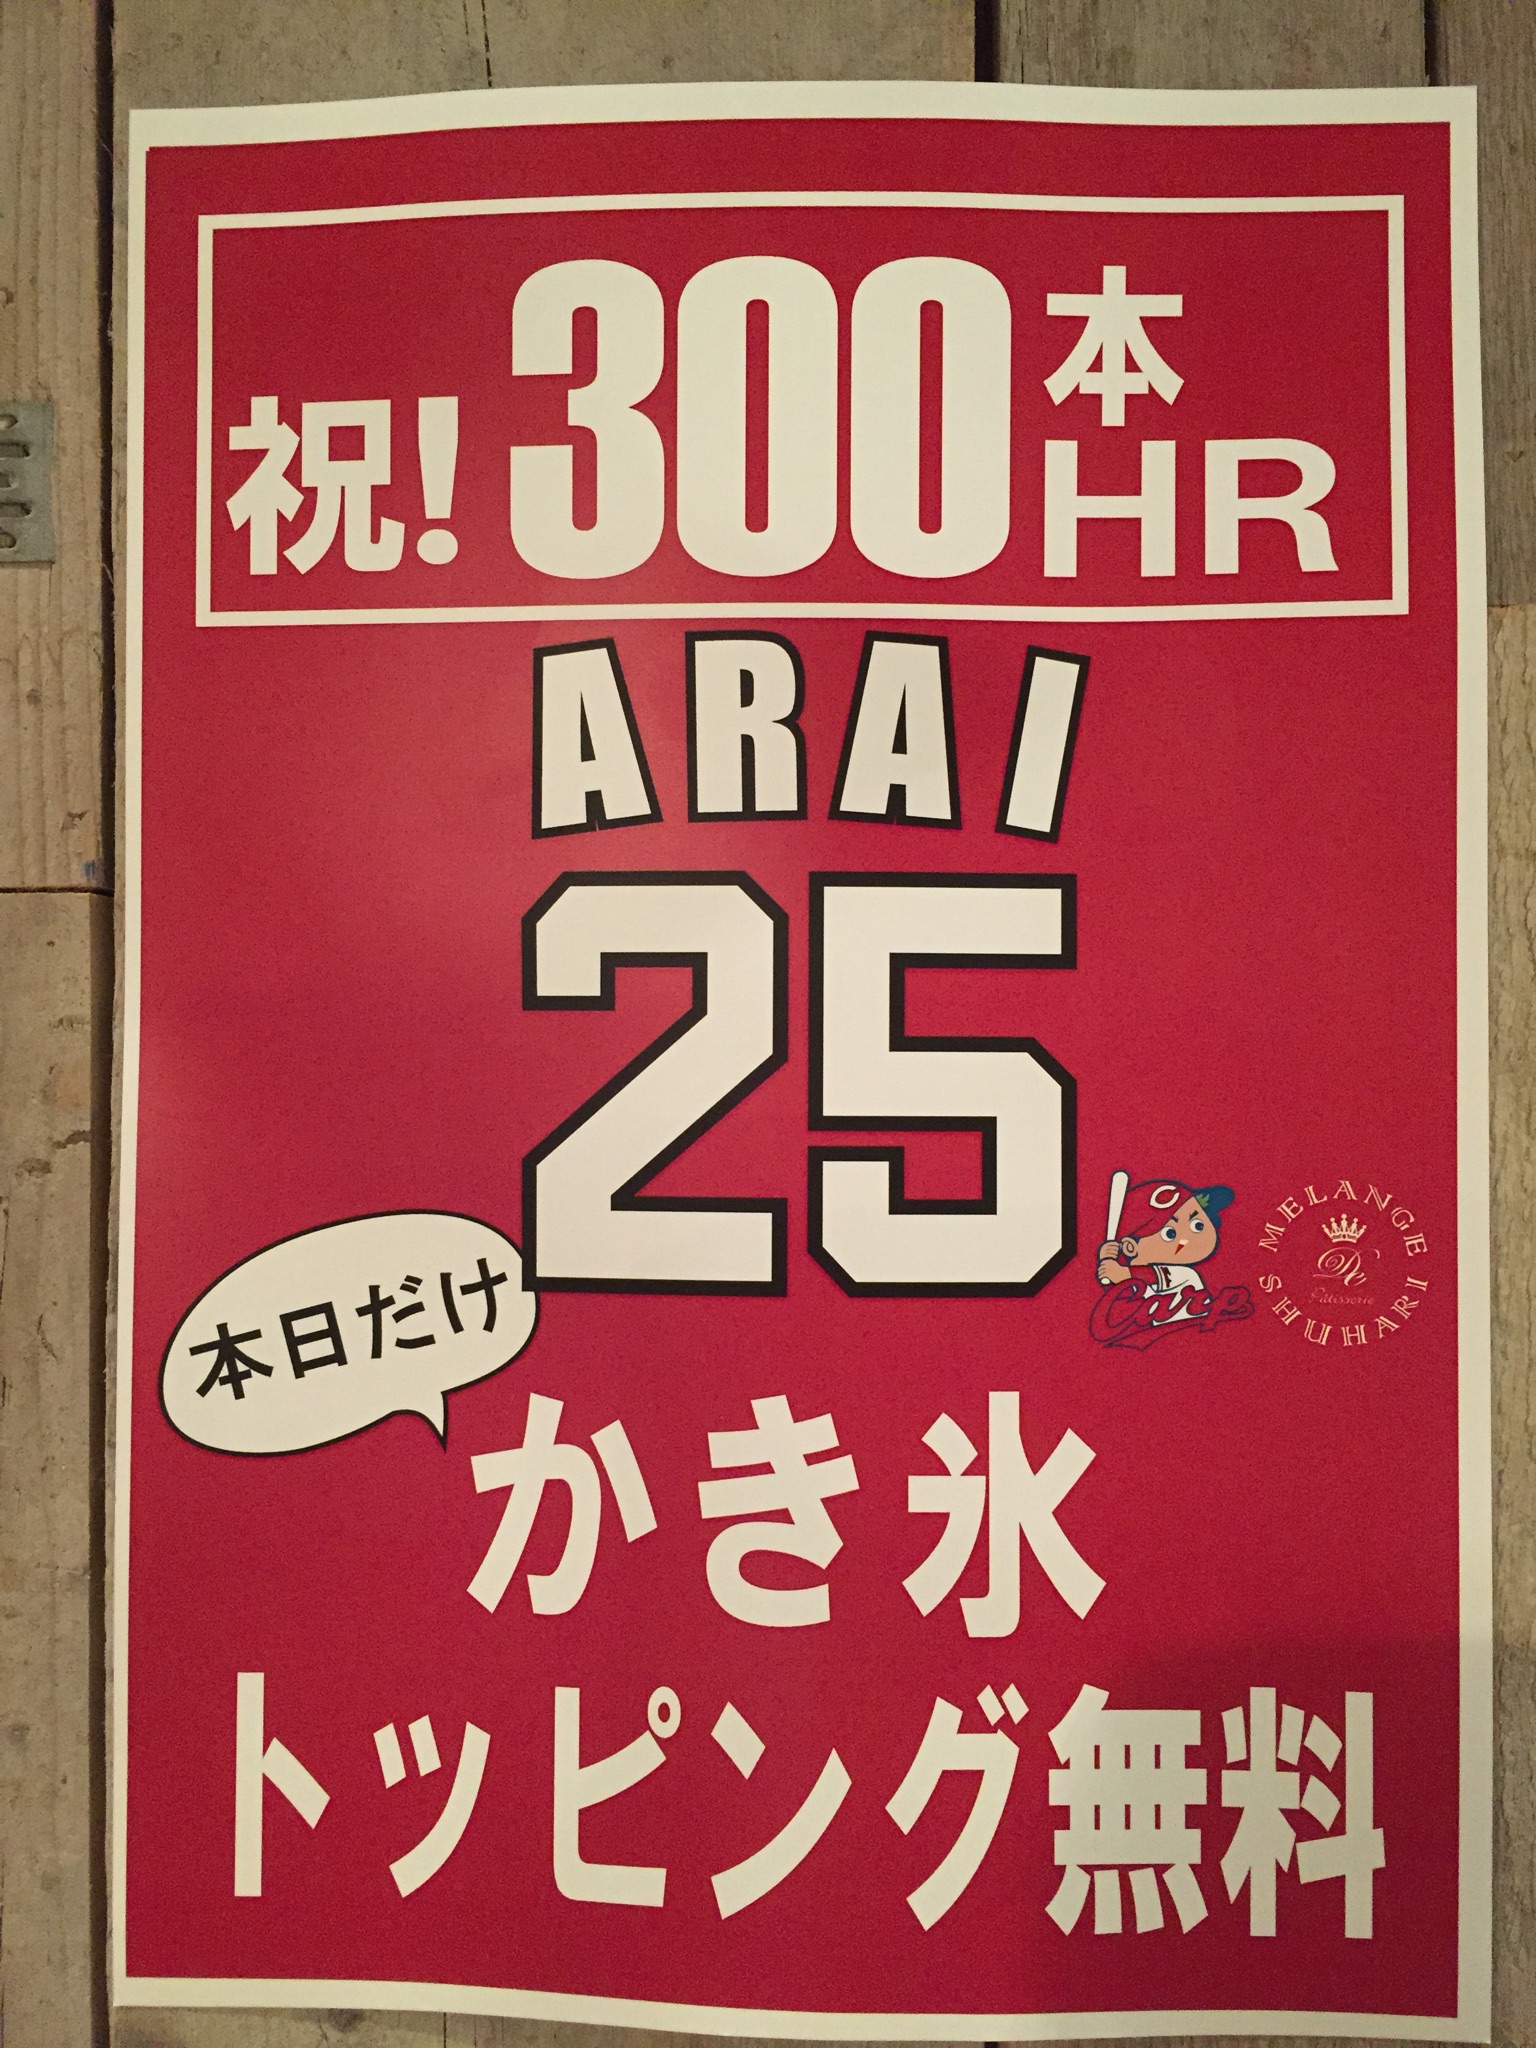 祝　新井貴浩選手　300本塁打